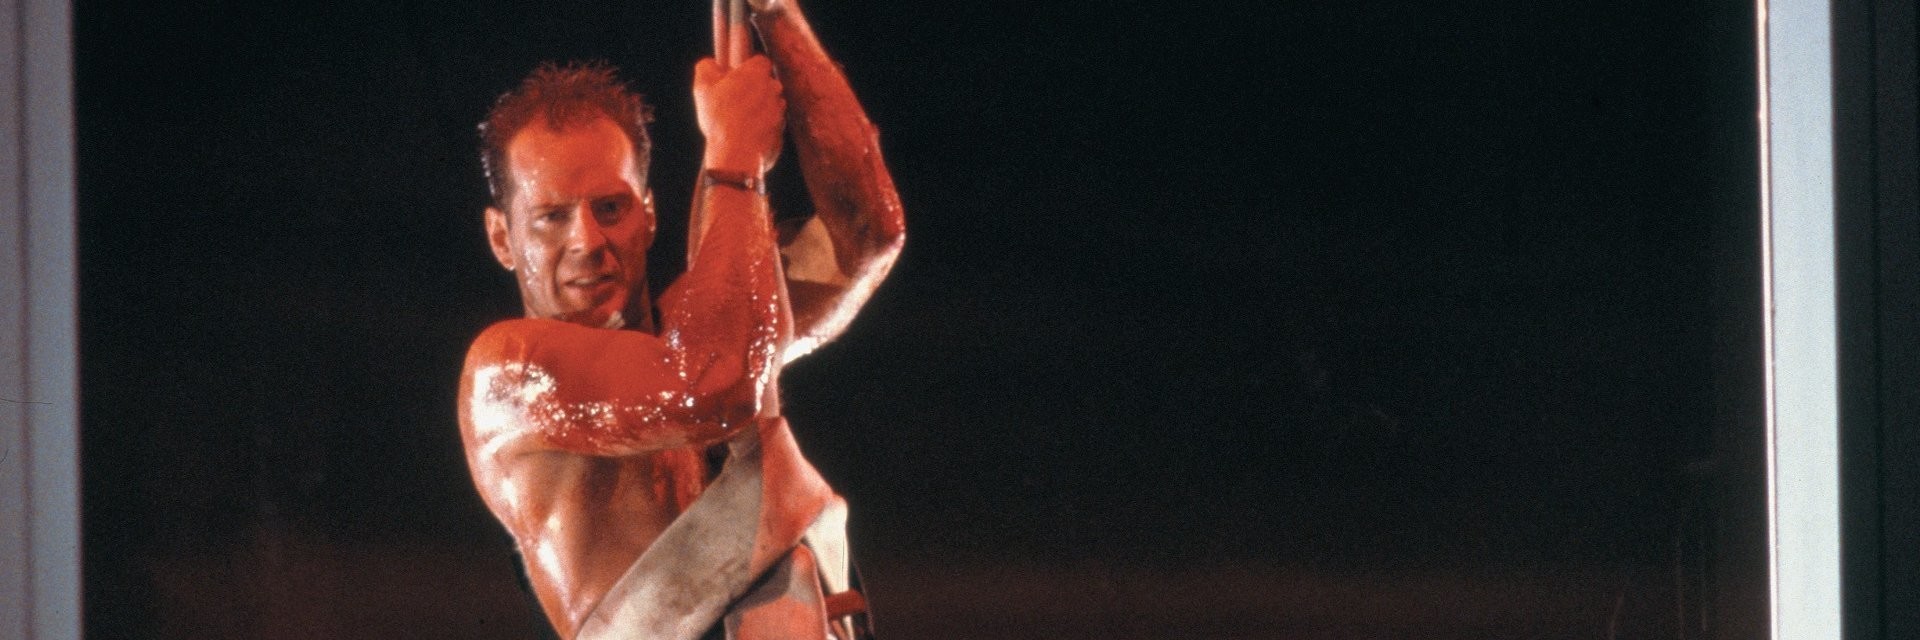 10 razones por las que Die Hard es la mejor saga de acción de todos los tiempos